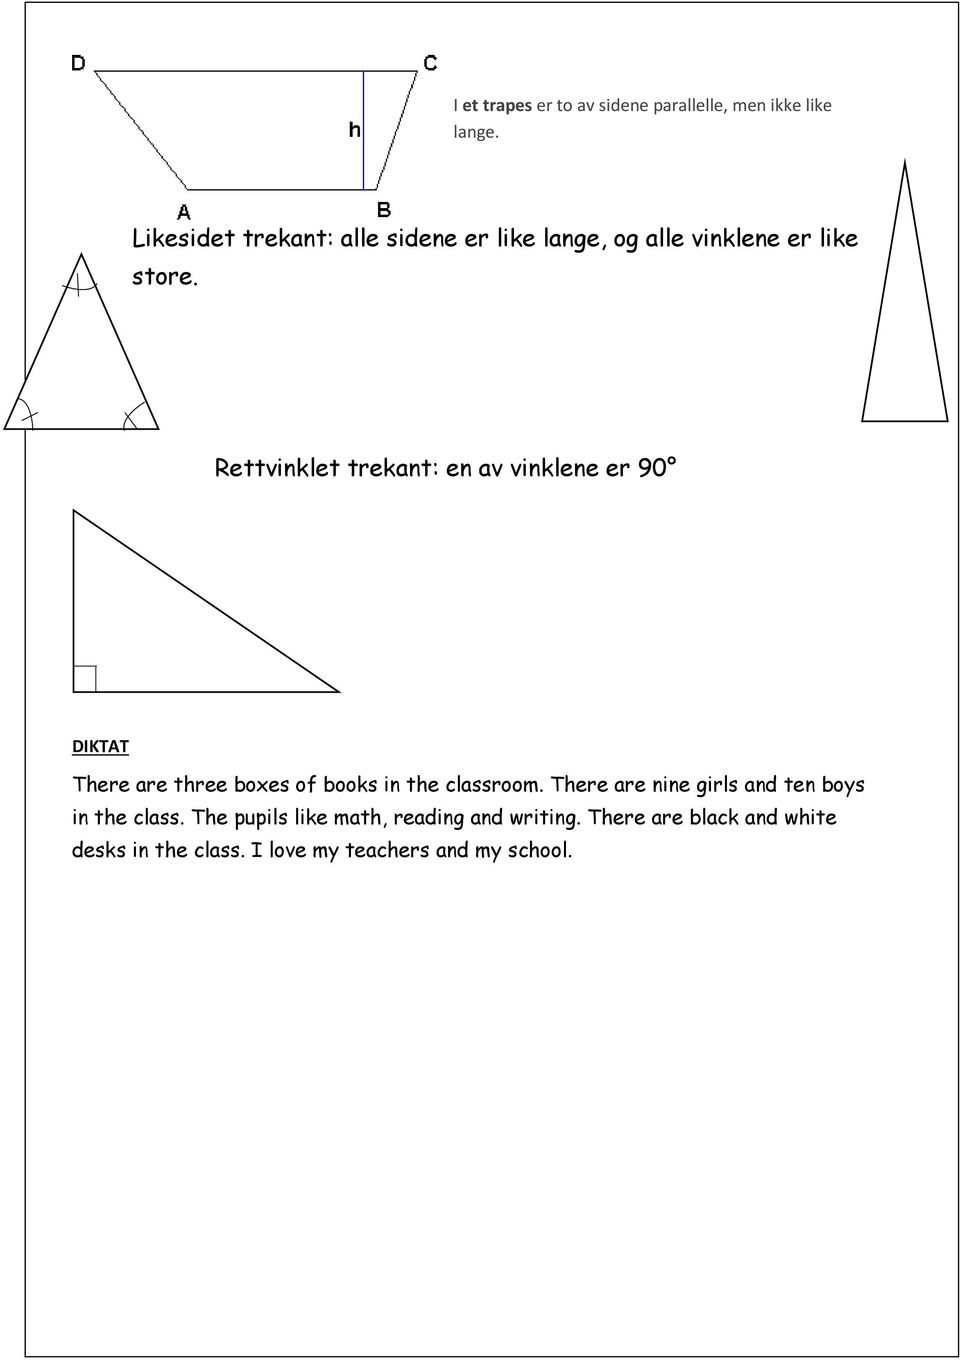 Rettvinklet trekant: en av vinklene er 90 DIKTAT There are three boxes of books in the classroom.